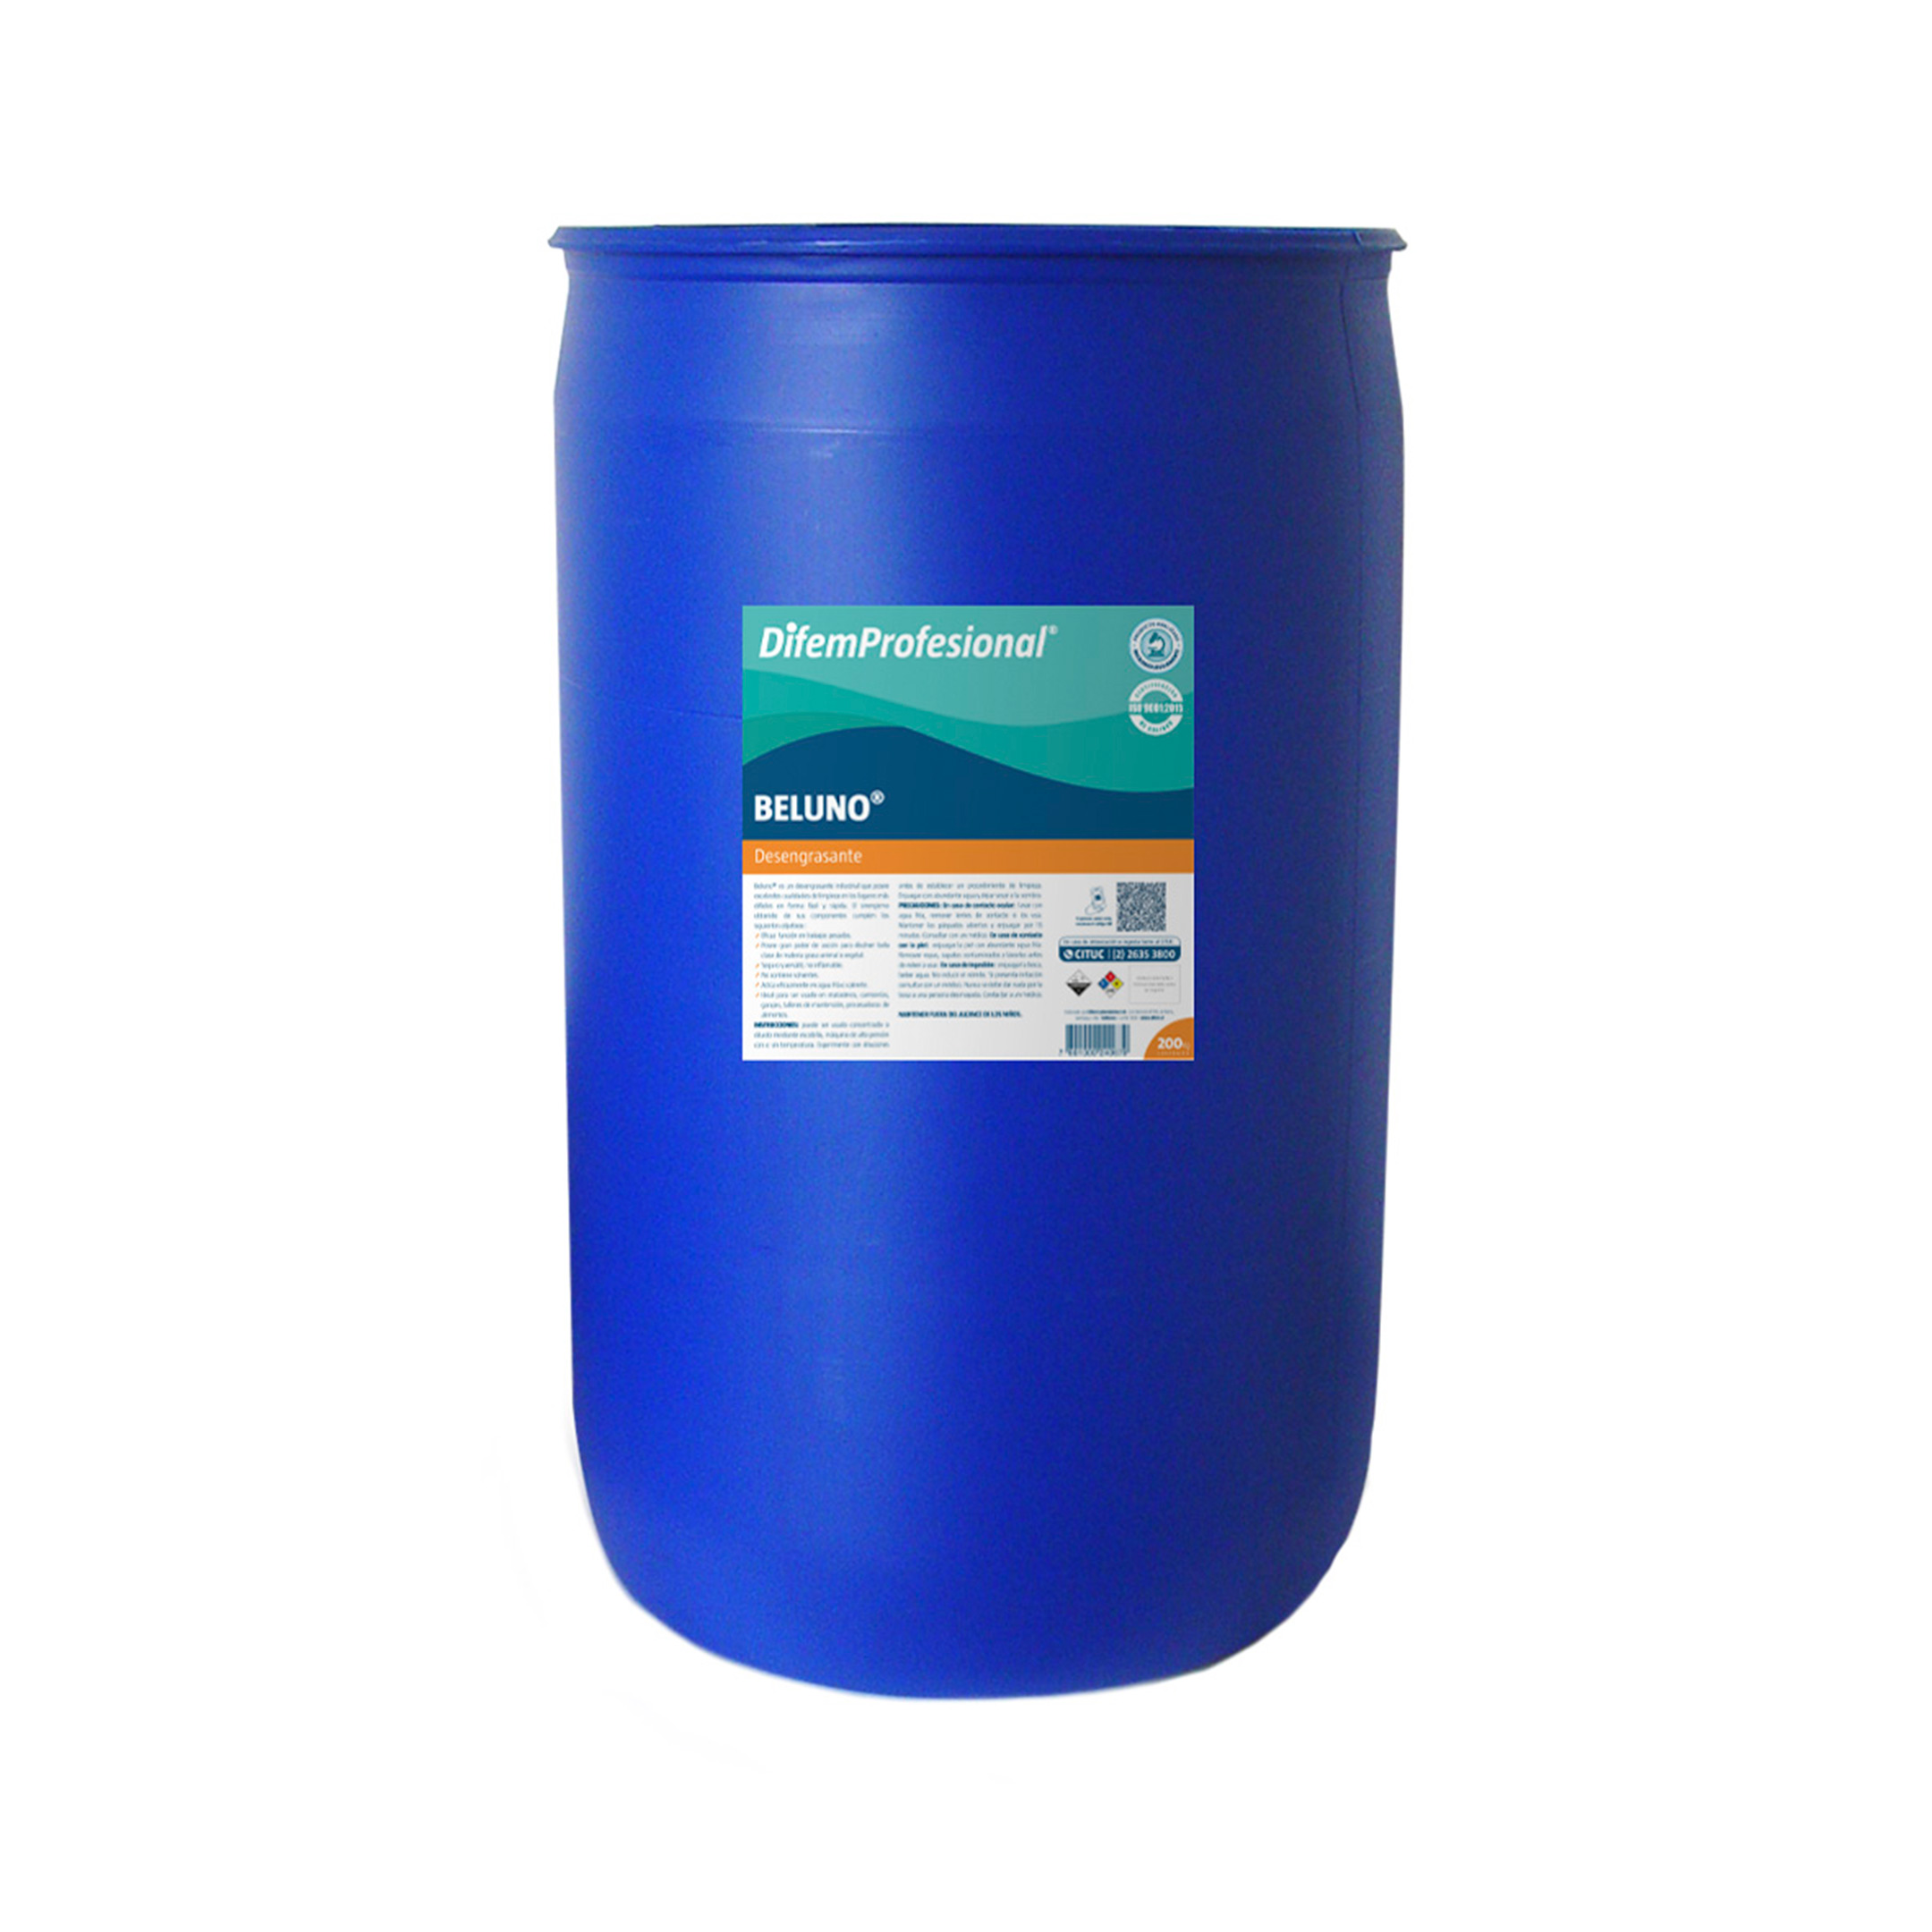 Es un detergente líquido alcalino, en base a soda cáustica para sistemas de limpieza CIP, maquinaria o equipos. No contiene solventes.